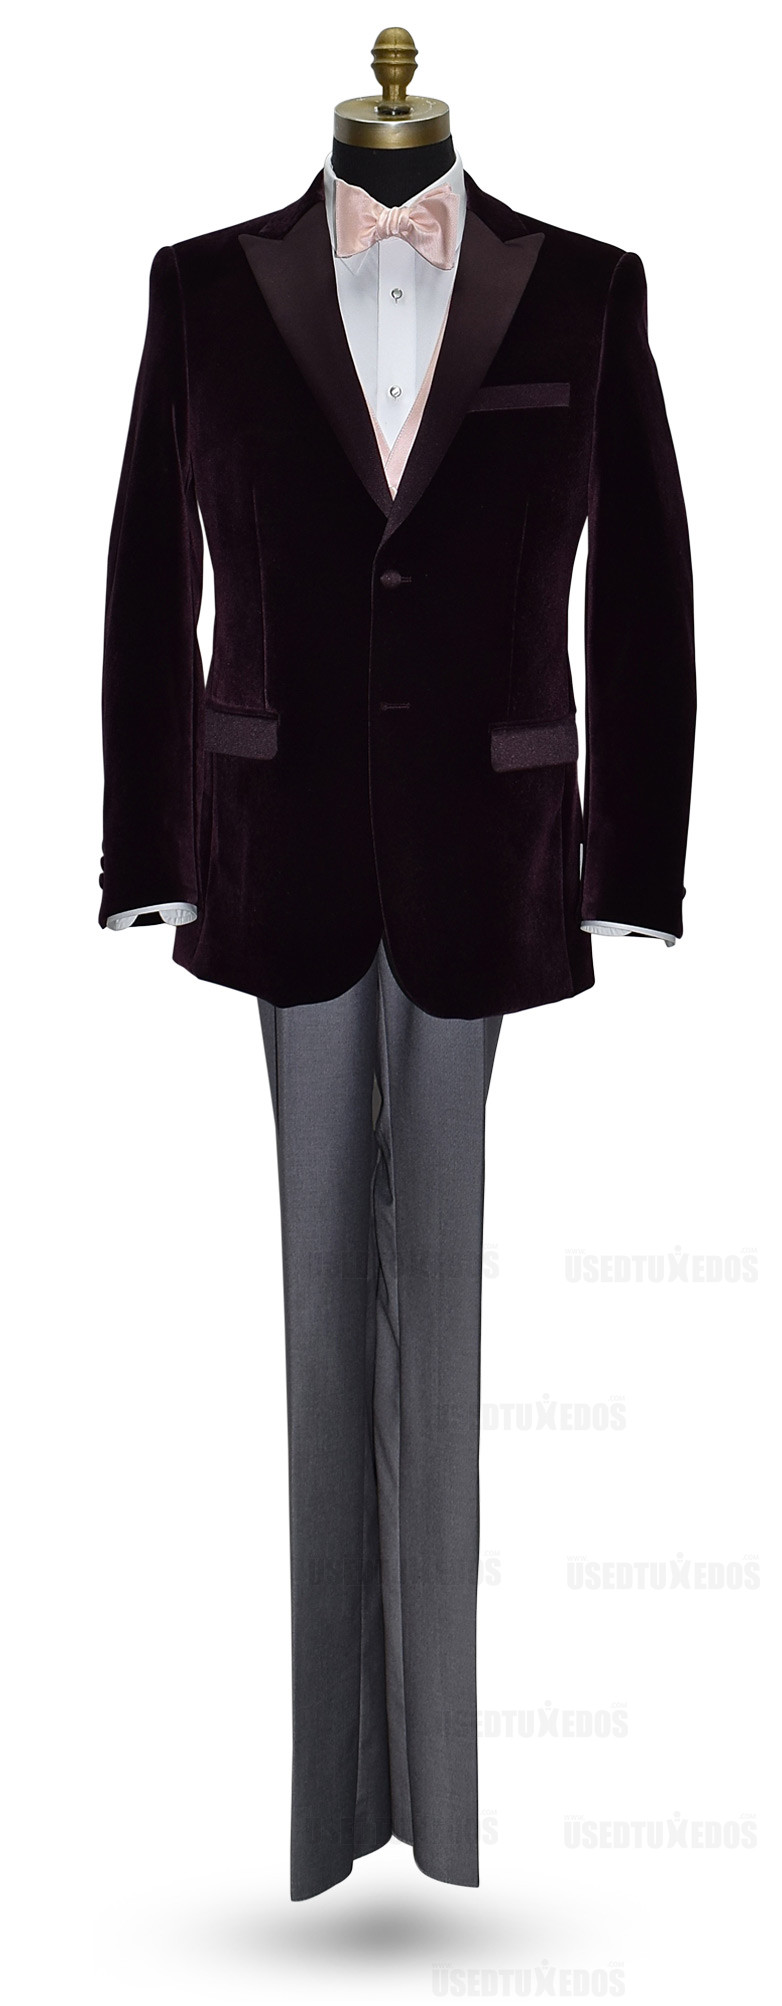 wine velvet tuxedo jacket with blush bowtie and blush vest